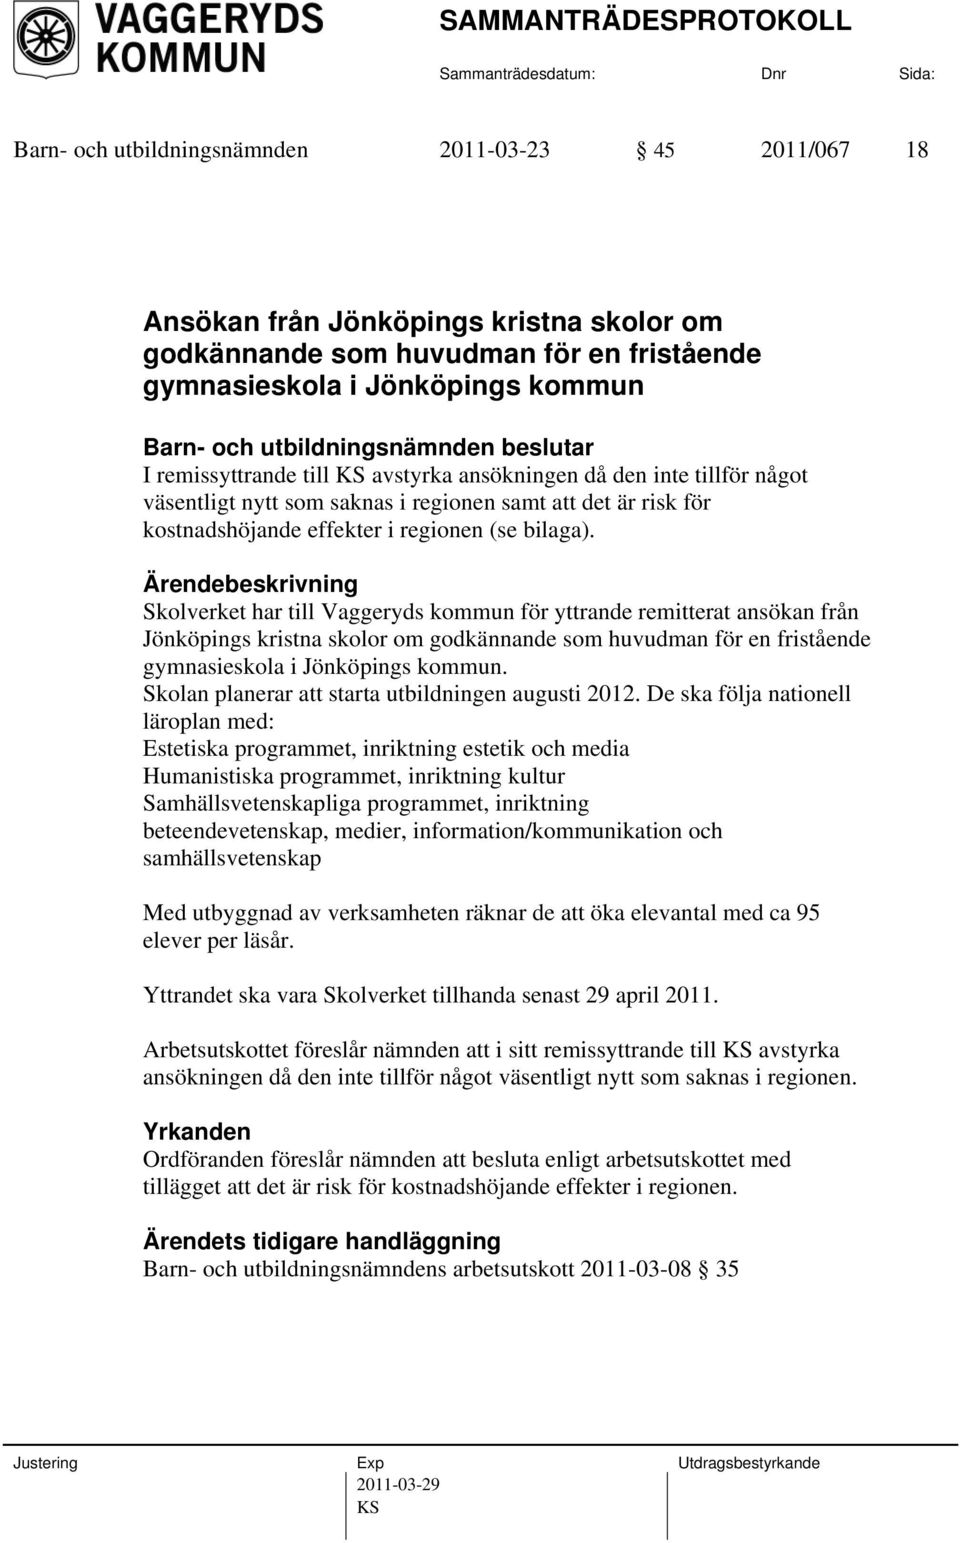 Skolverket har till Vaggeryds kommun för yttrande remitterat ansökan från Jönköpings kristna skolor om godkännande som huvudman för en fristående gymnasieskola i Jönköpings kommun.